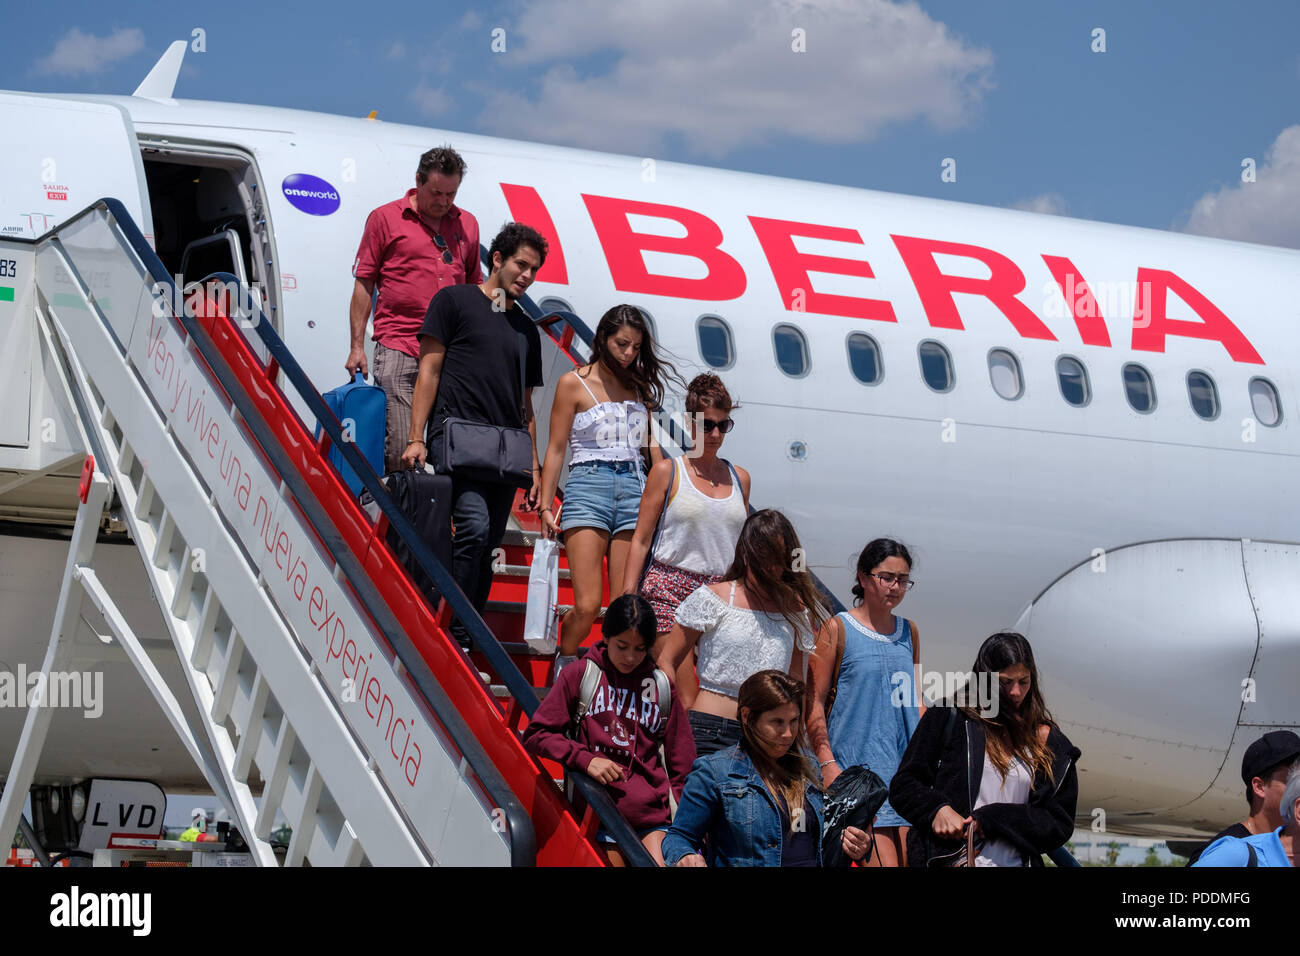 Lo sbarco dei passeggeri di un aereo Iberia Foto Stock